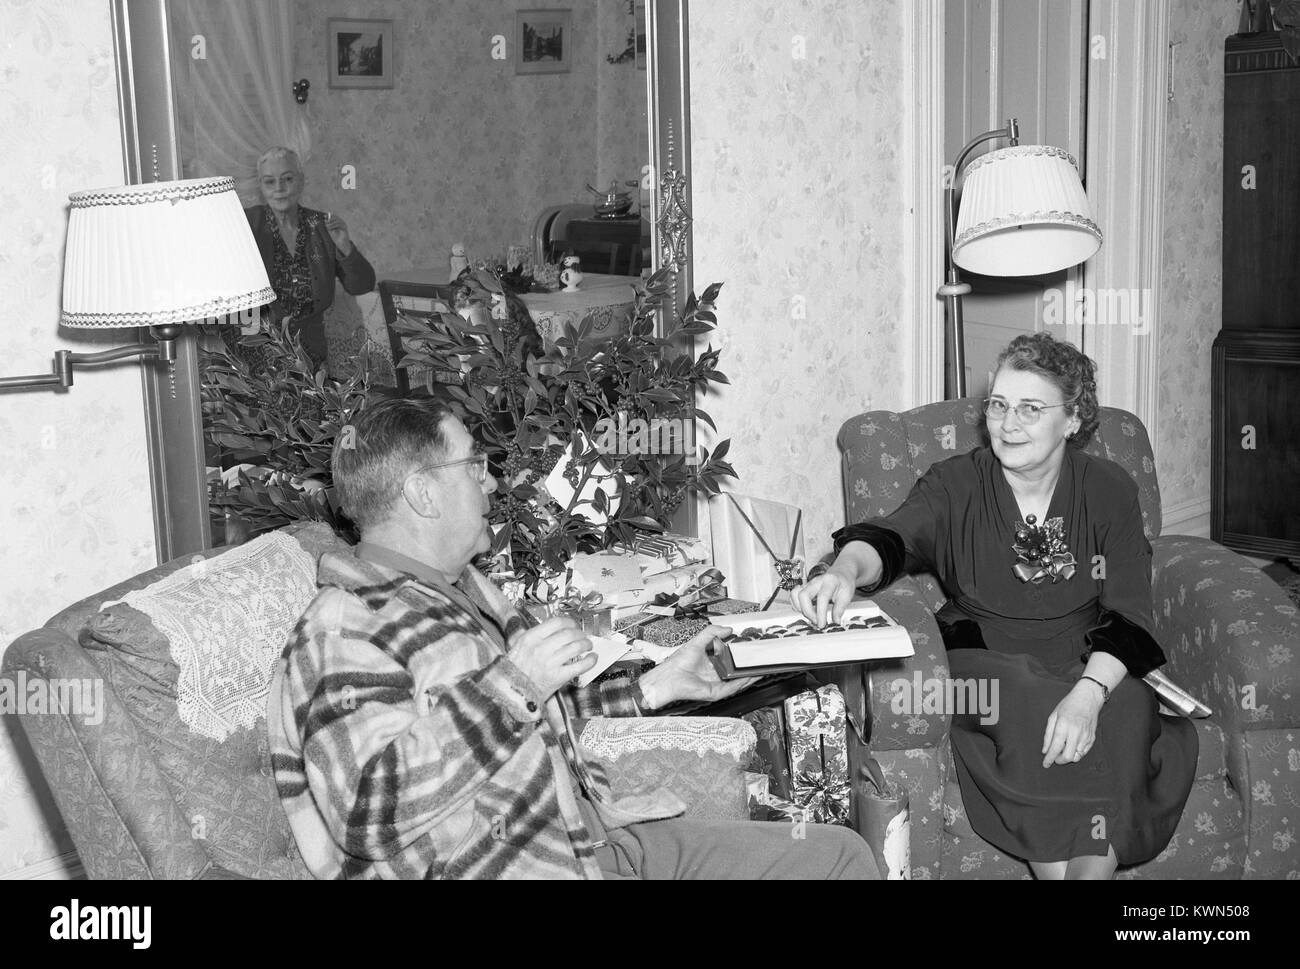 Einem erwachsenen Mann und große Paar sitzt im Sessel in einem vorstadthaus und eine Schachtel Pralinen teilen, der Ehemann übergeben die Pralinen auf die Ehefrau, während eine reife Frau, die in einem Spiegel an der Wand sichtbar, schaut an und raucht eine Zigarette, Eureka, Kalifornien, 1950. Stockfoto